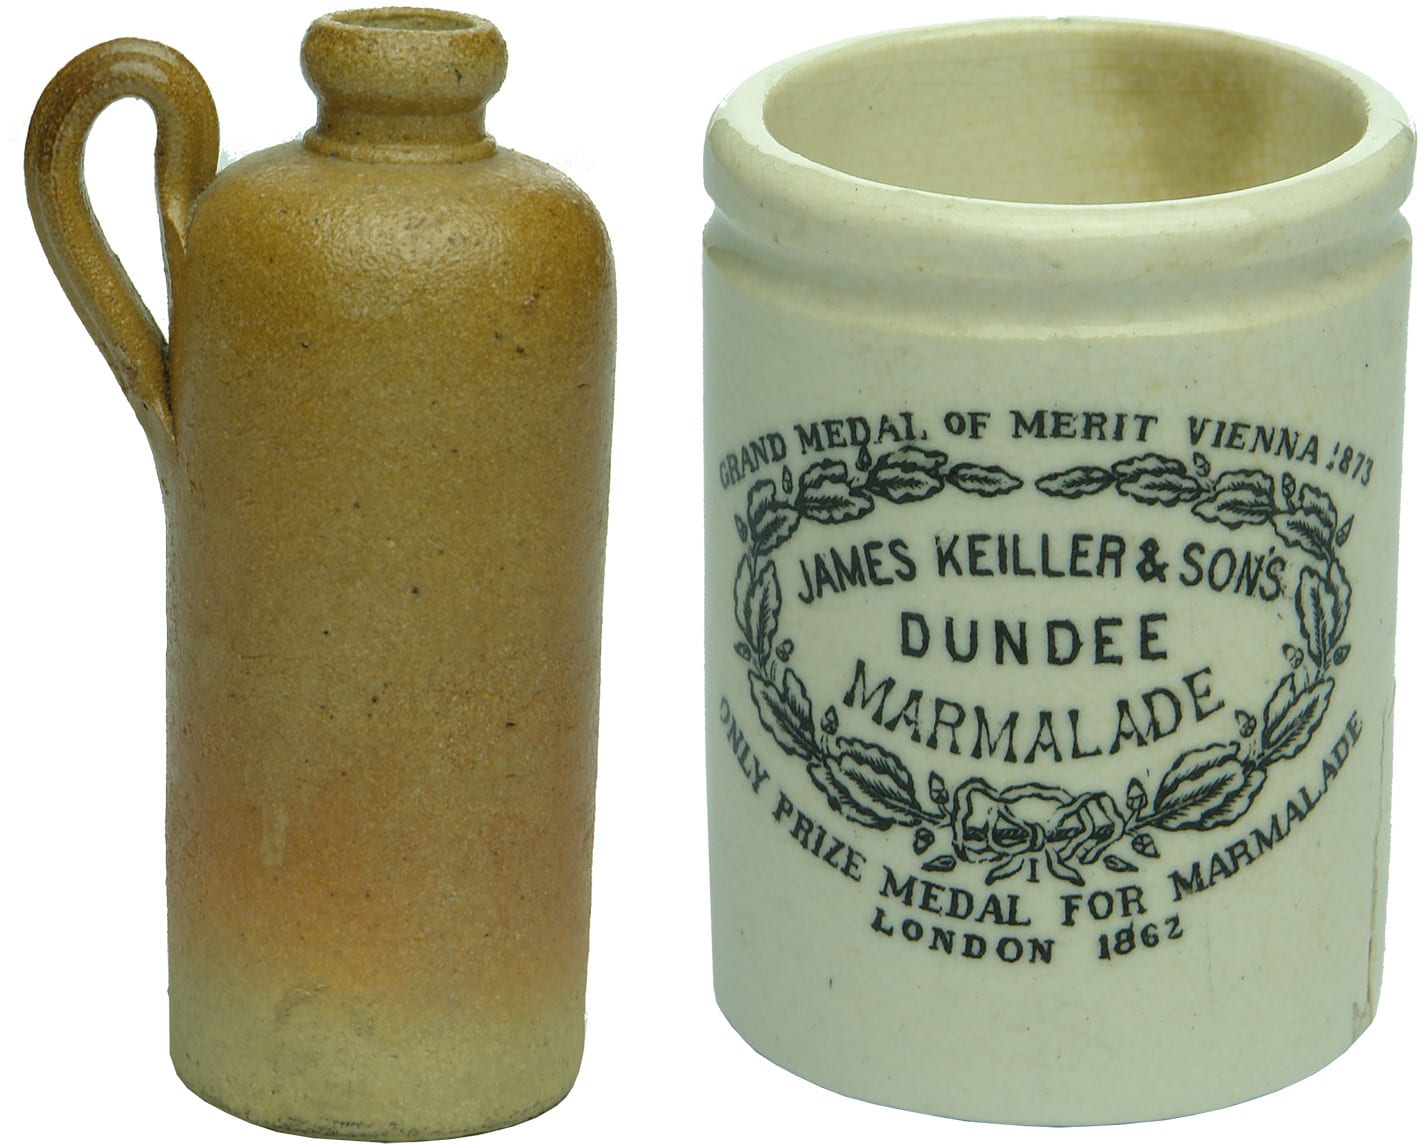 Sample Stoneware Jars Bottles